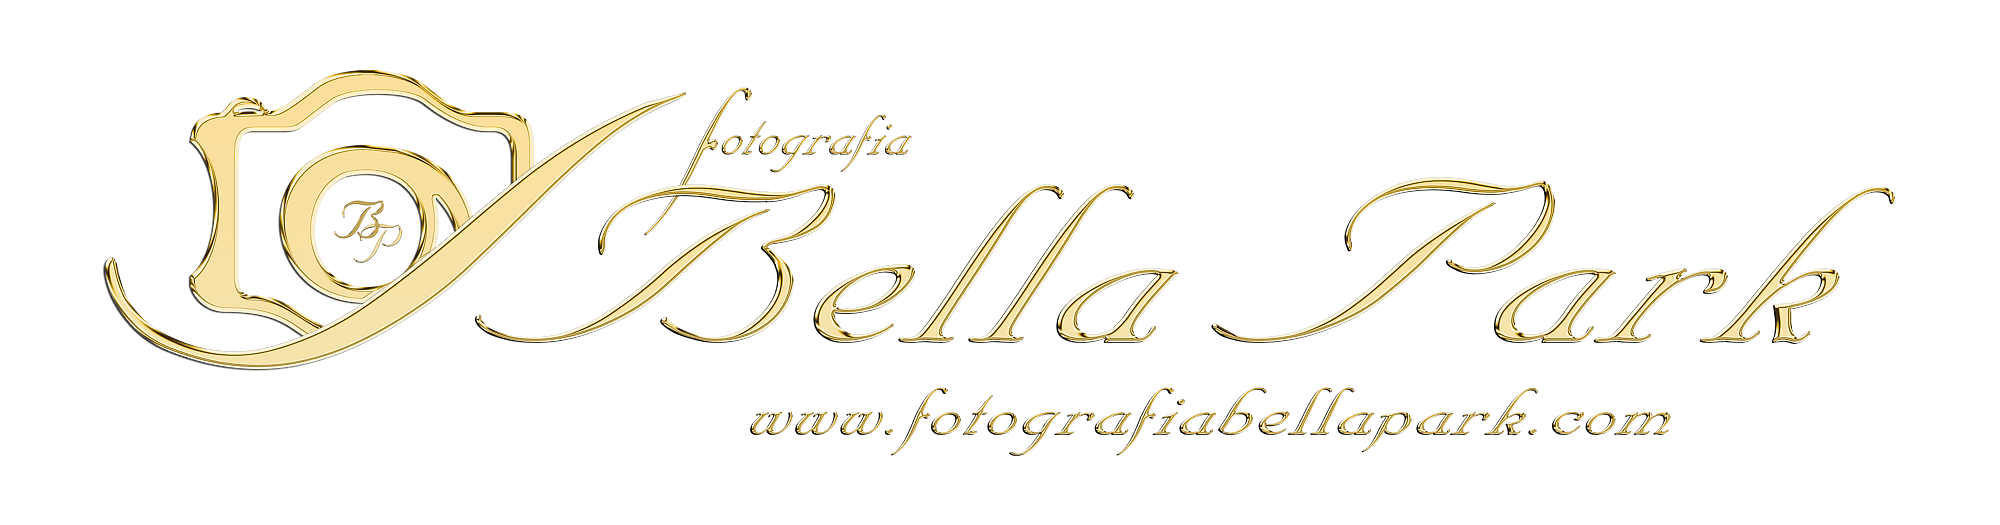 Fotografia Bella Park - logo-copia-blanco-2021.png